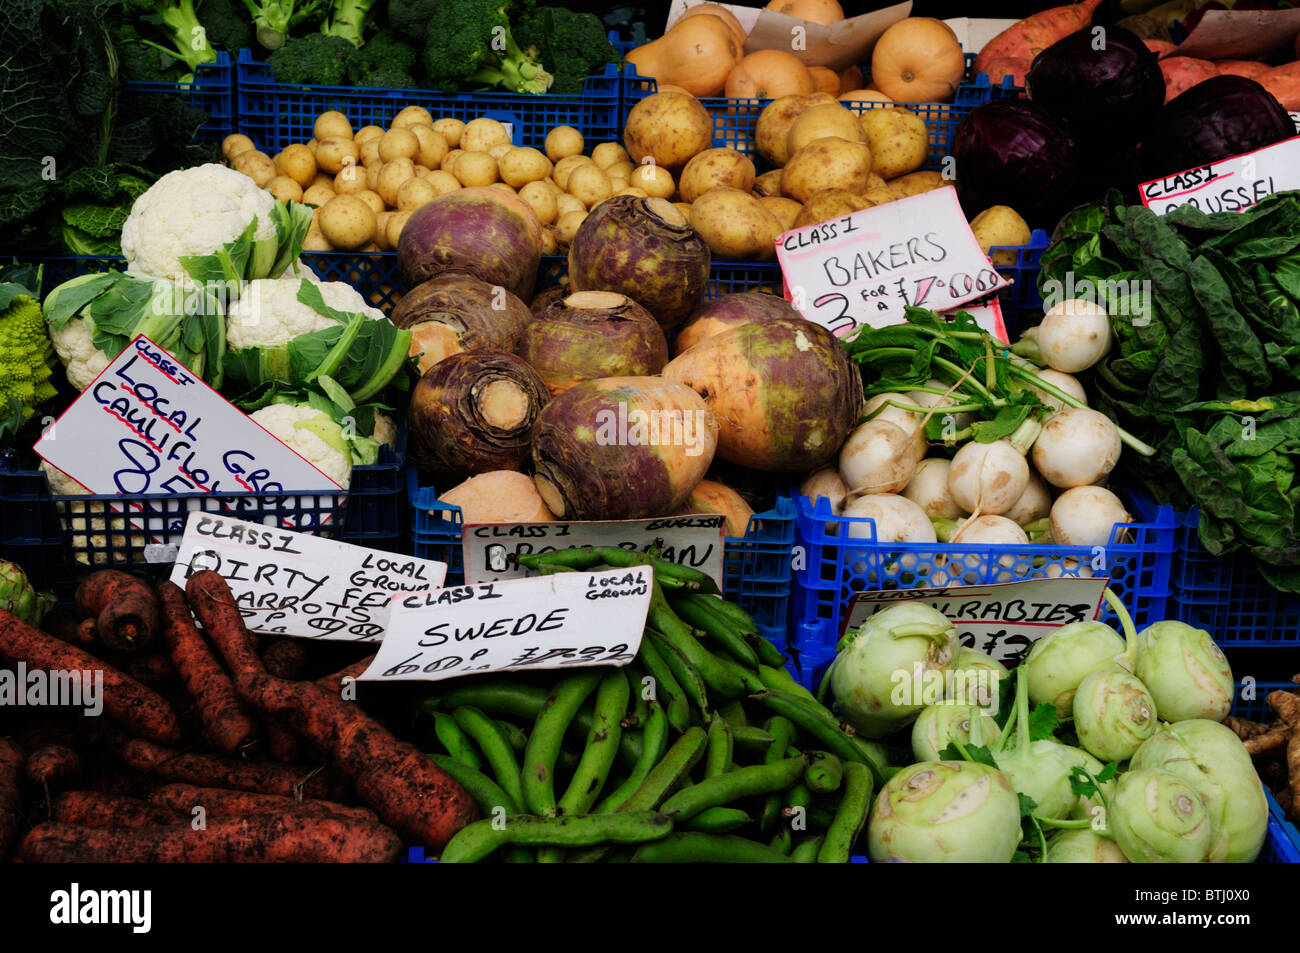 Kiosque de légumes sur le marché, Cambridge, England, UK Banque D'Images